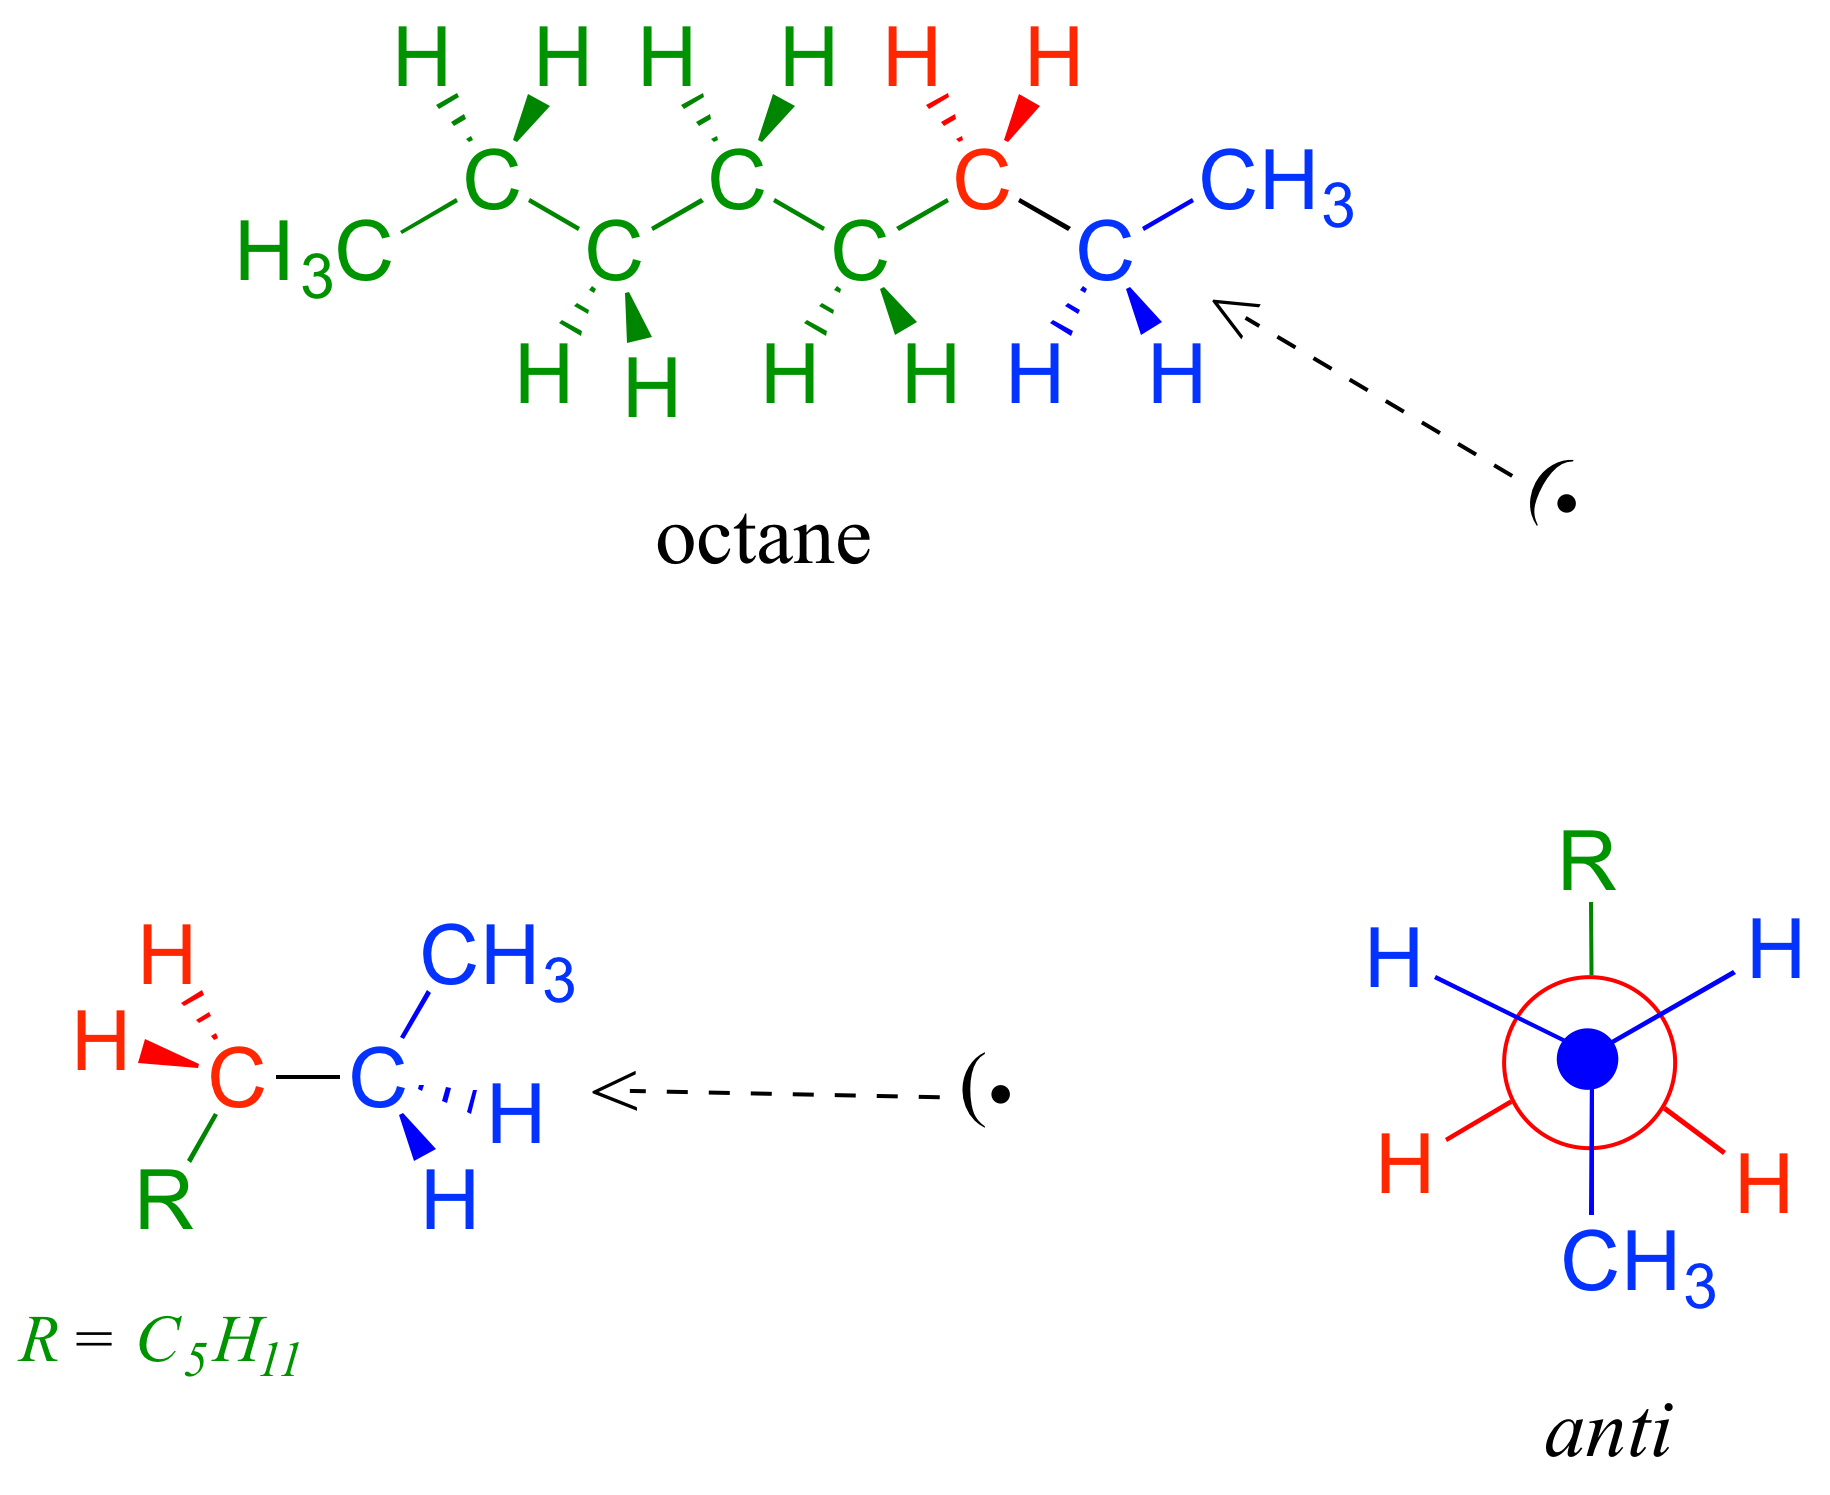 Estructura lineal y estructura en zigzag de la molécula de octano con C 2 y sus sustituyentes en azul, C 3 y sus sustituyentes en rojo y los carbonos restantes en verde. Va a la proyección Newman en anti con carbono 4 a 8 convirtiéndose en “R” en la parte posterior hacia arriba.